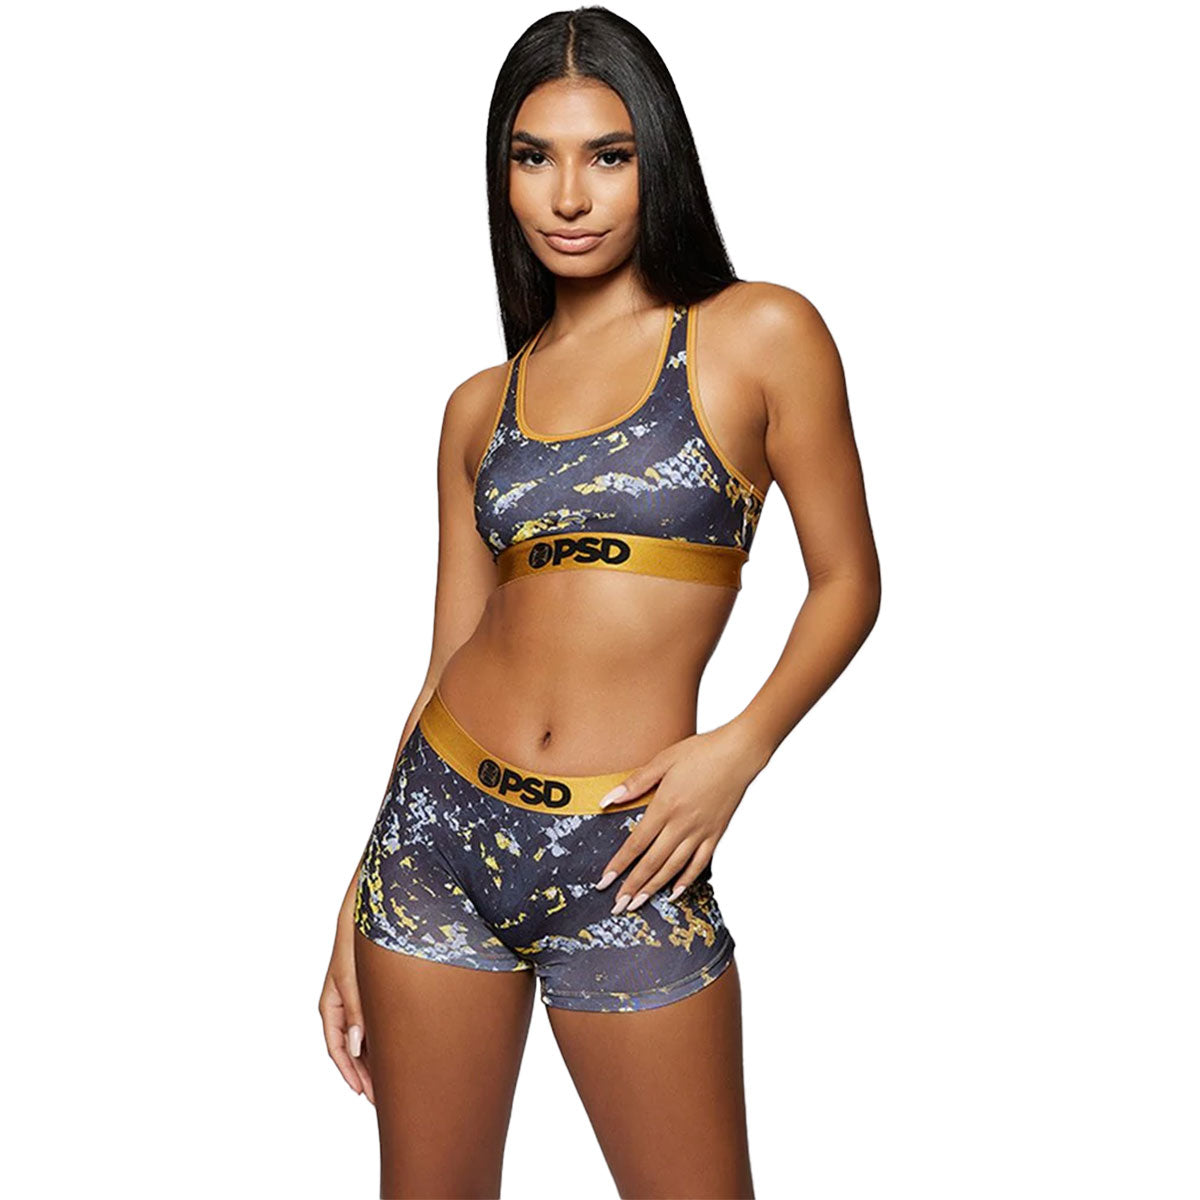 PSD Golden Scales Sports Bra Women's Top Underwear (Refurbished